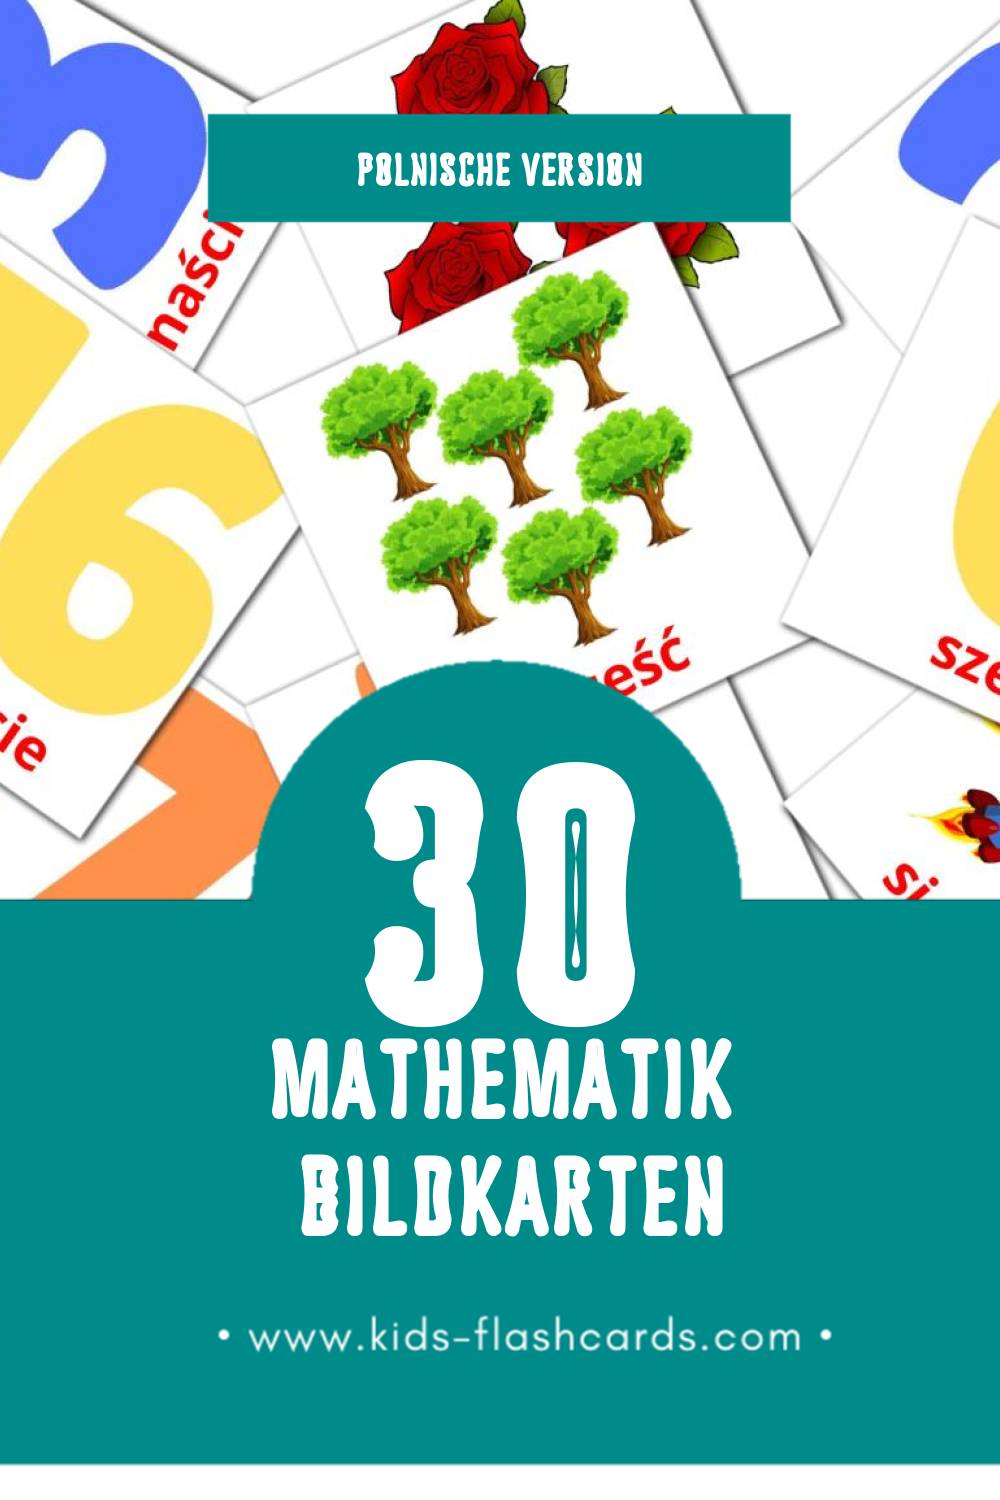 Visual Matematyka Flashcards für Kleinkinder (30 Karten in Polnisch)